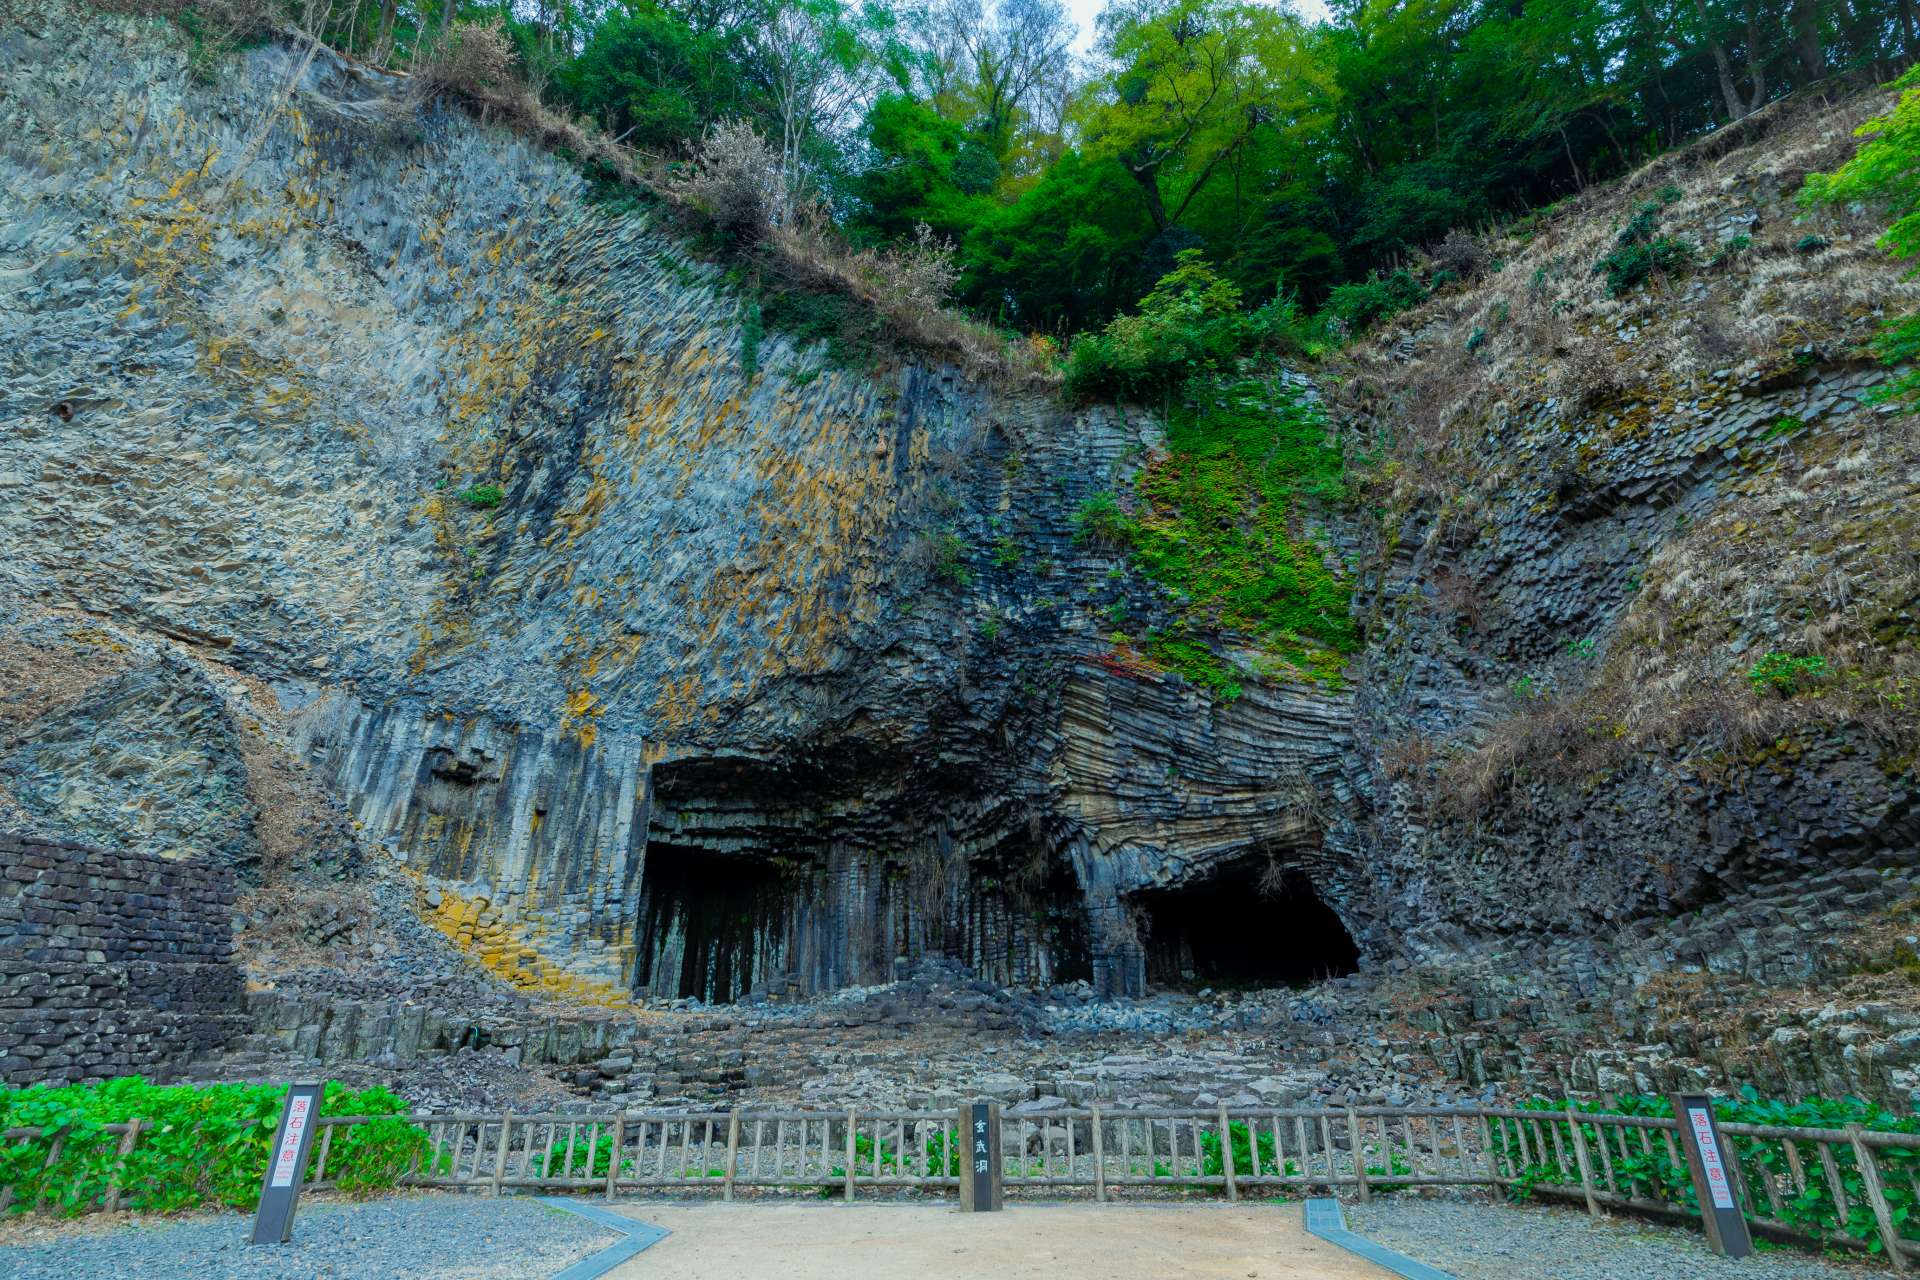 La cueva de Genbudo se cierne frente a nosotros, la unión de columnas, que parece una obra de arte magnífica, ¡es impresionante!